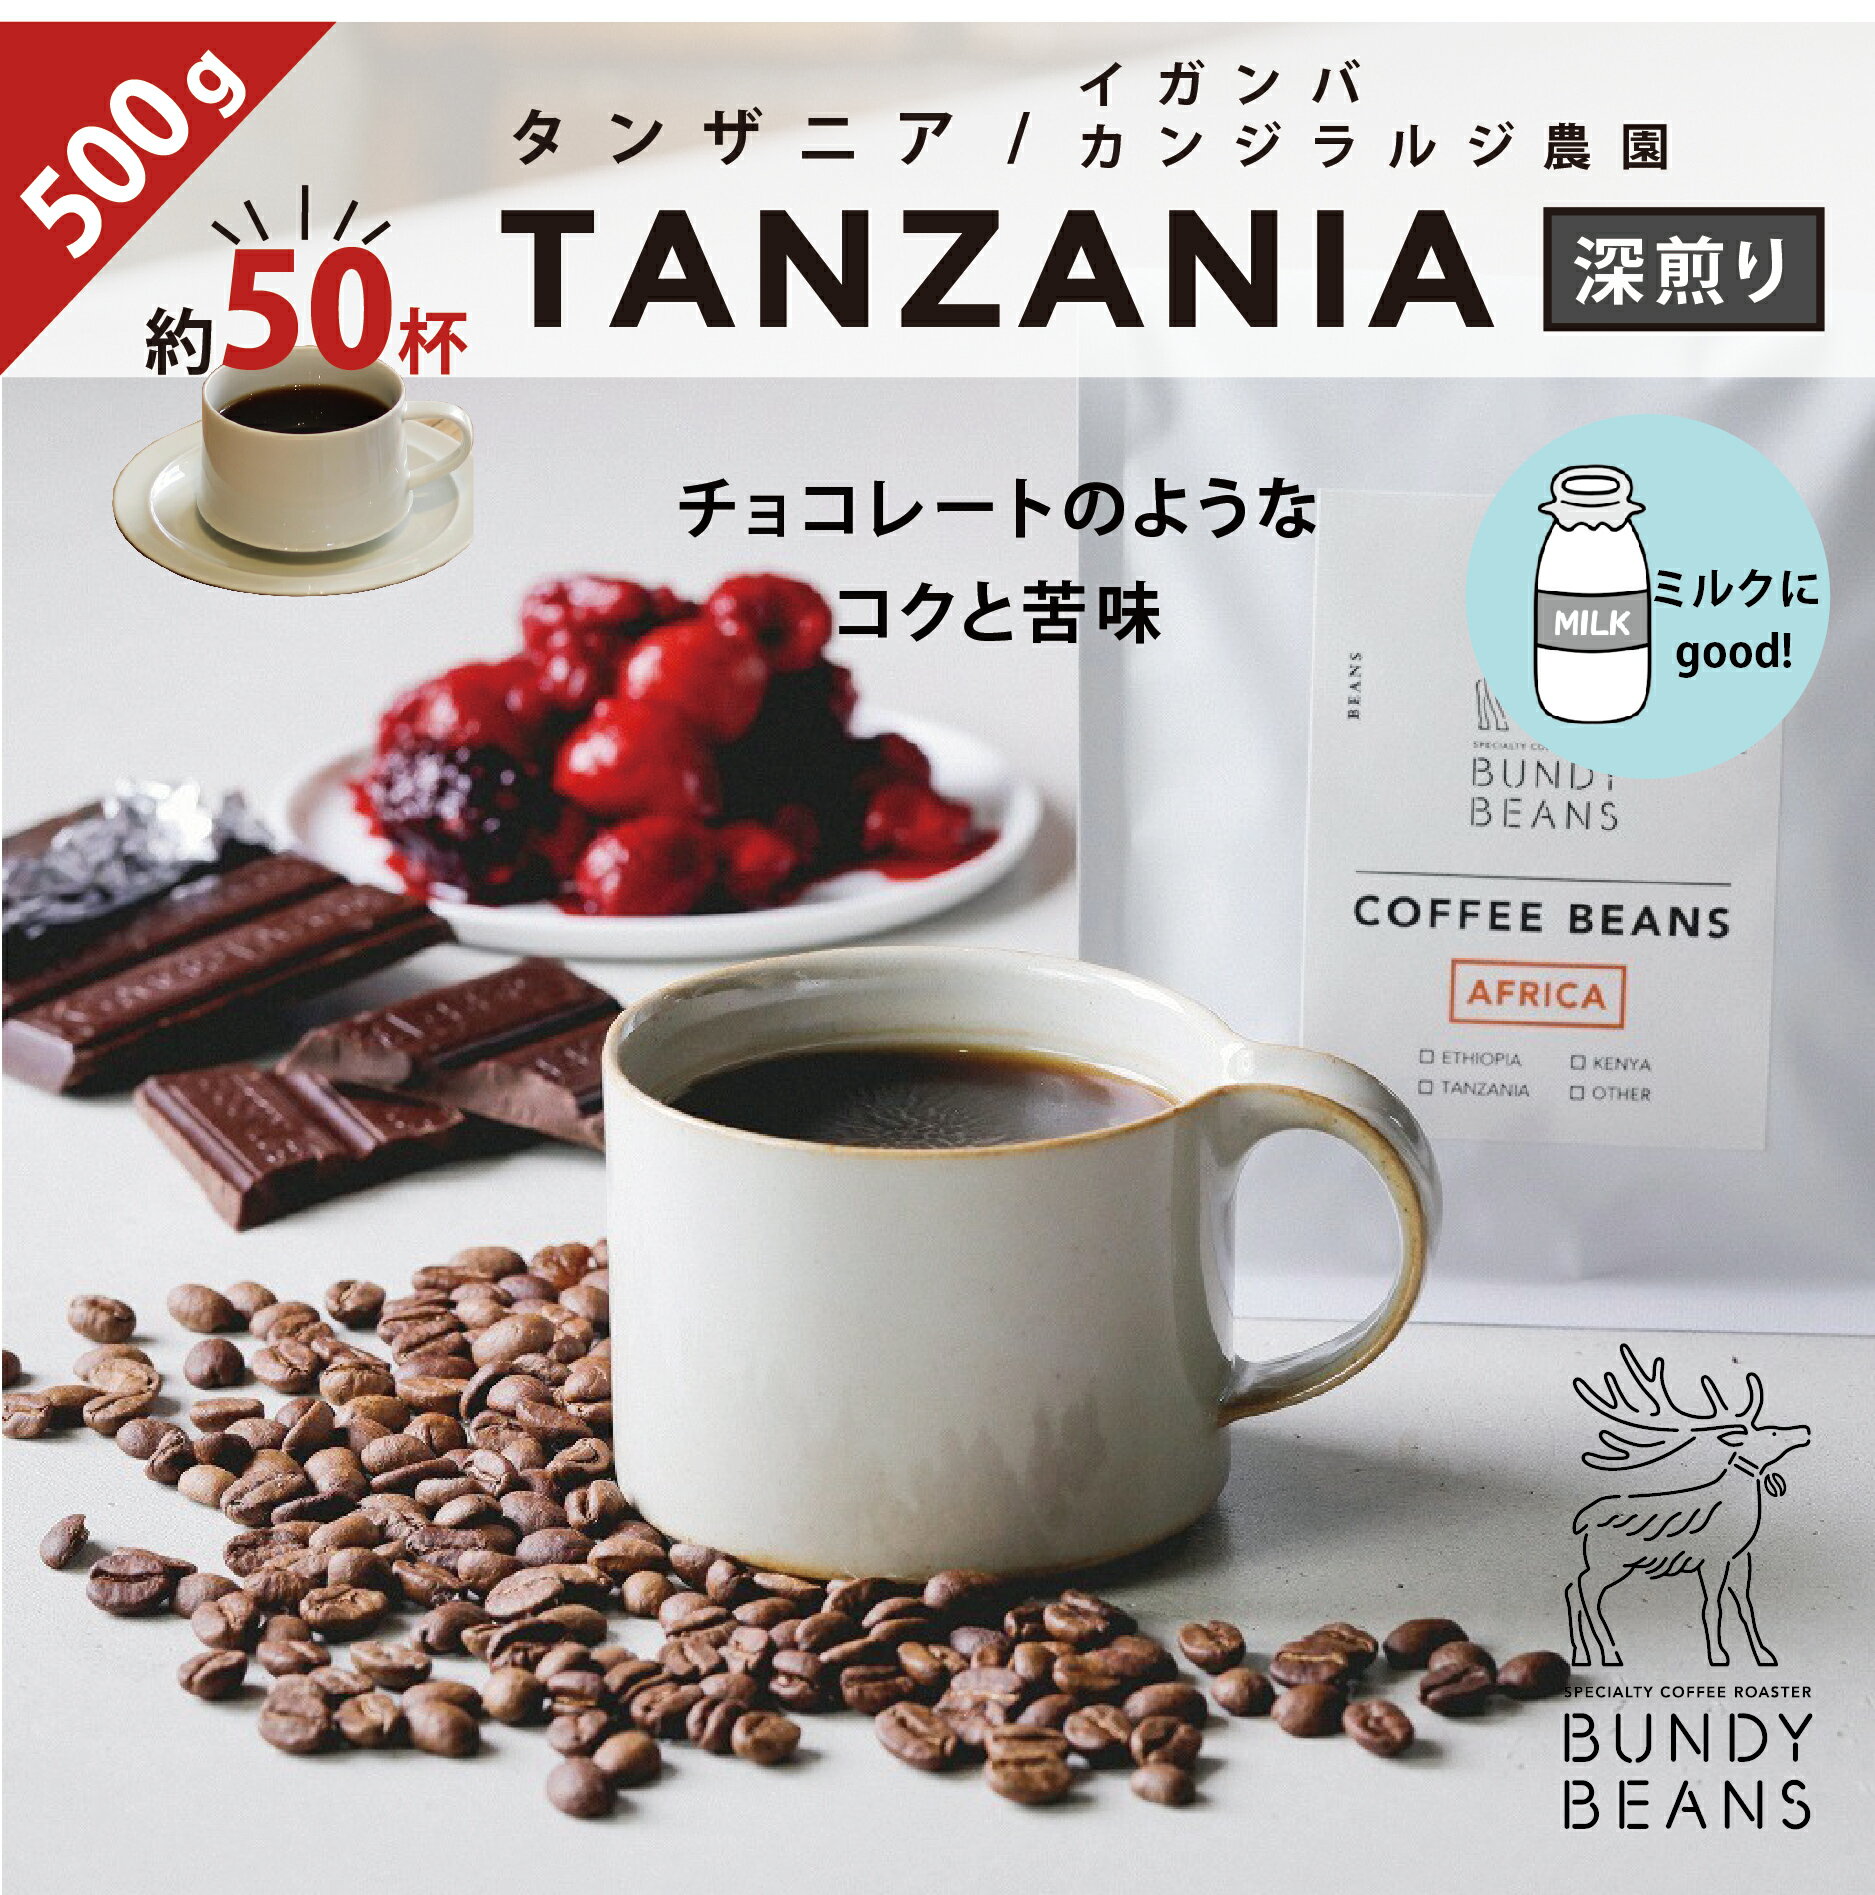 バンディービーンズ コーヒー 500gタンザニア/TANZANIA 中深煎り コーヒーギフト スペシャルティコーヒー コーヒー ギフト アイスコーヒー 珈琲 カフェオレ gift カフェオレベース 味比べ 人気 コーヒーギフトセット ギフトセット コーヒー豆